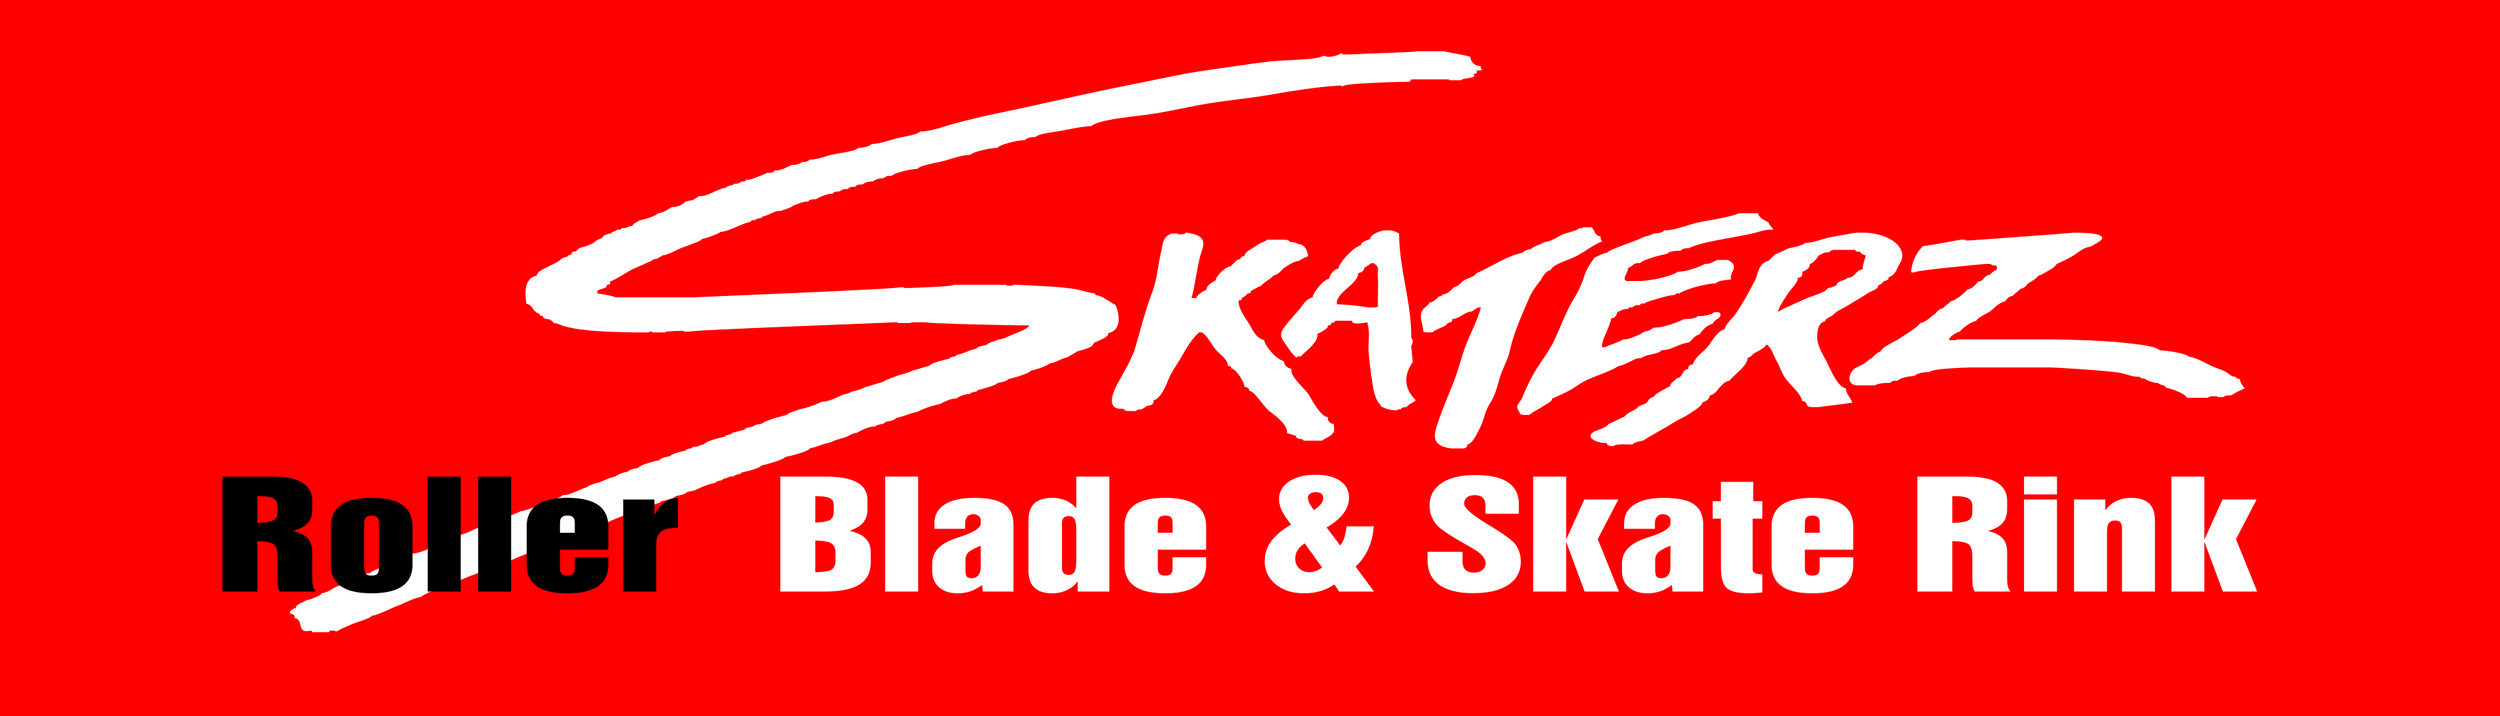 Skaterz - Logo 2017.jpg